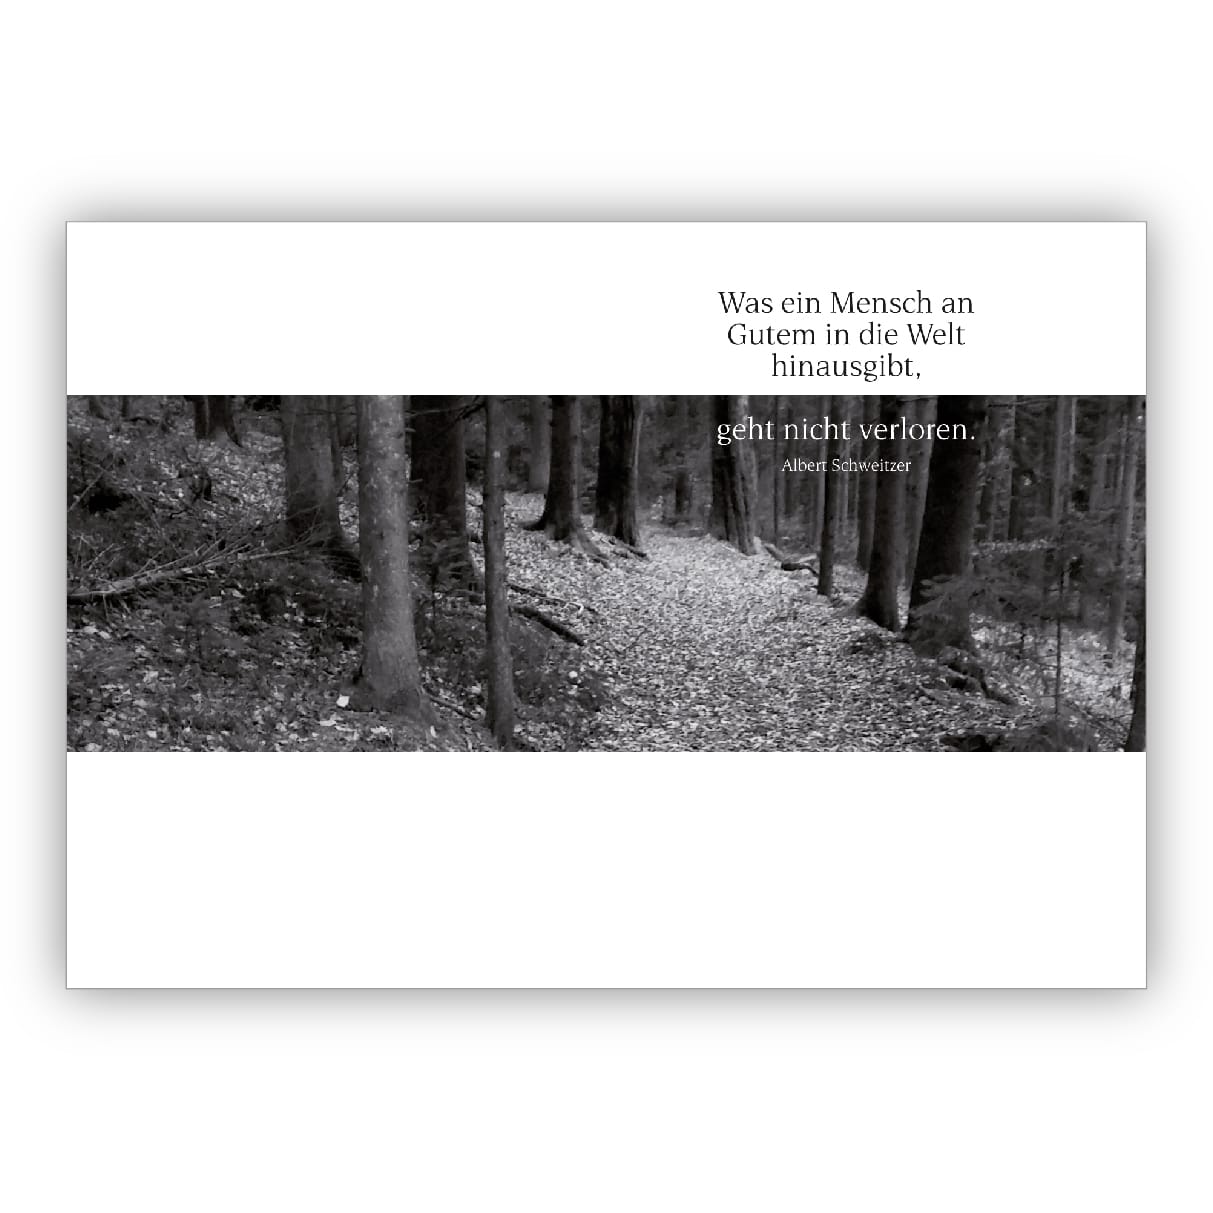 Edle moderne Trauerkarte, Kondolenzkarte in schwarz,weiß mit Waldweg